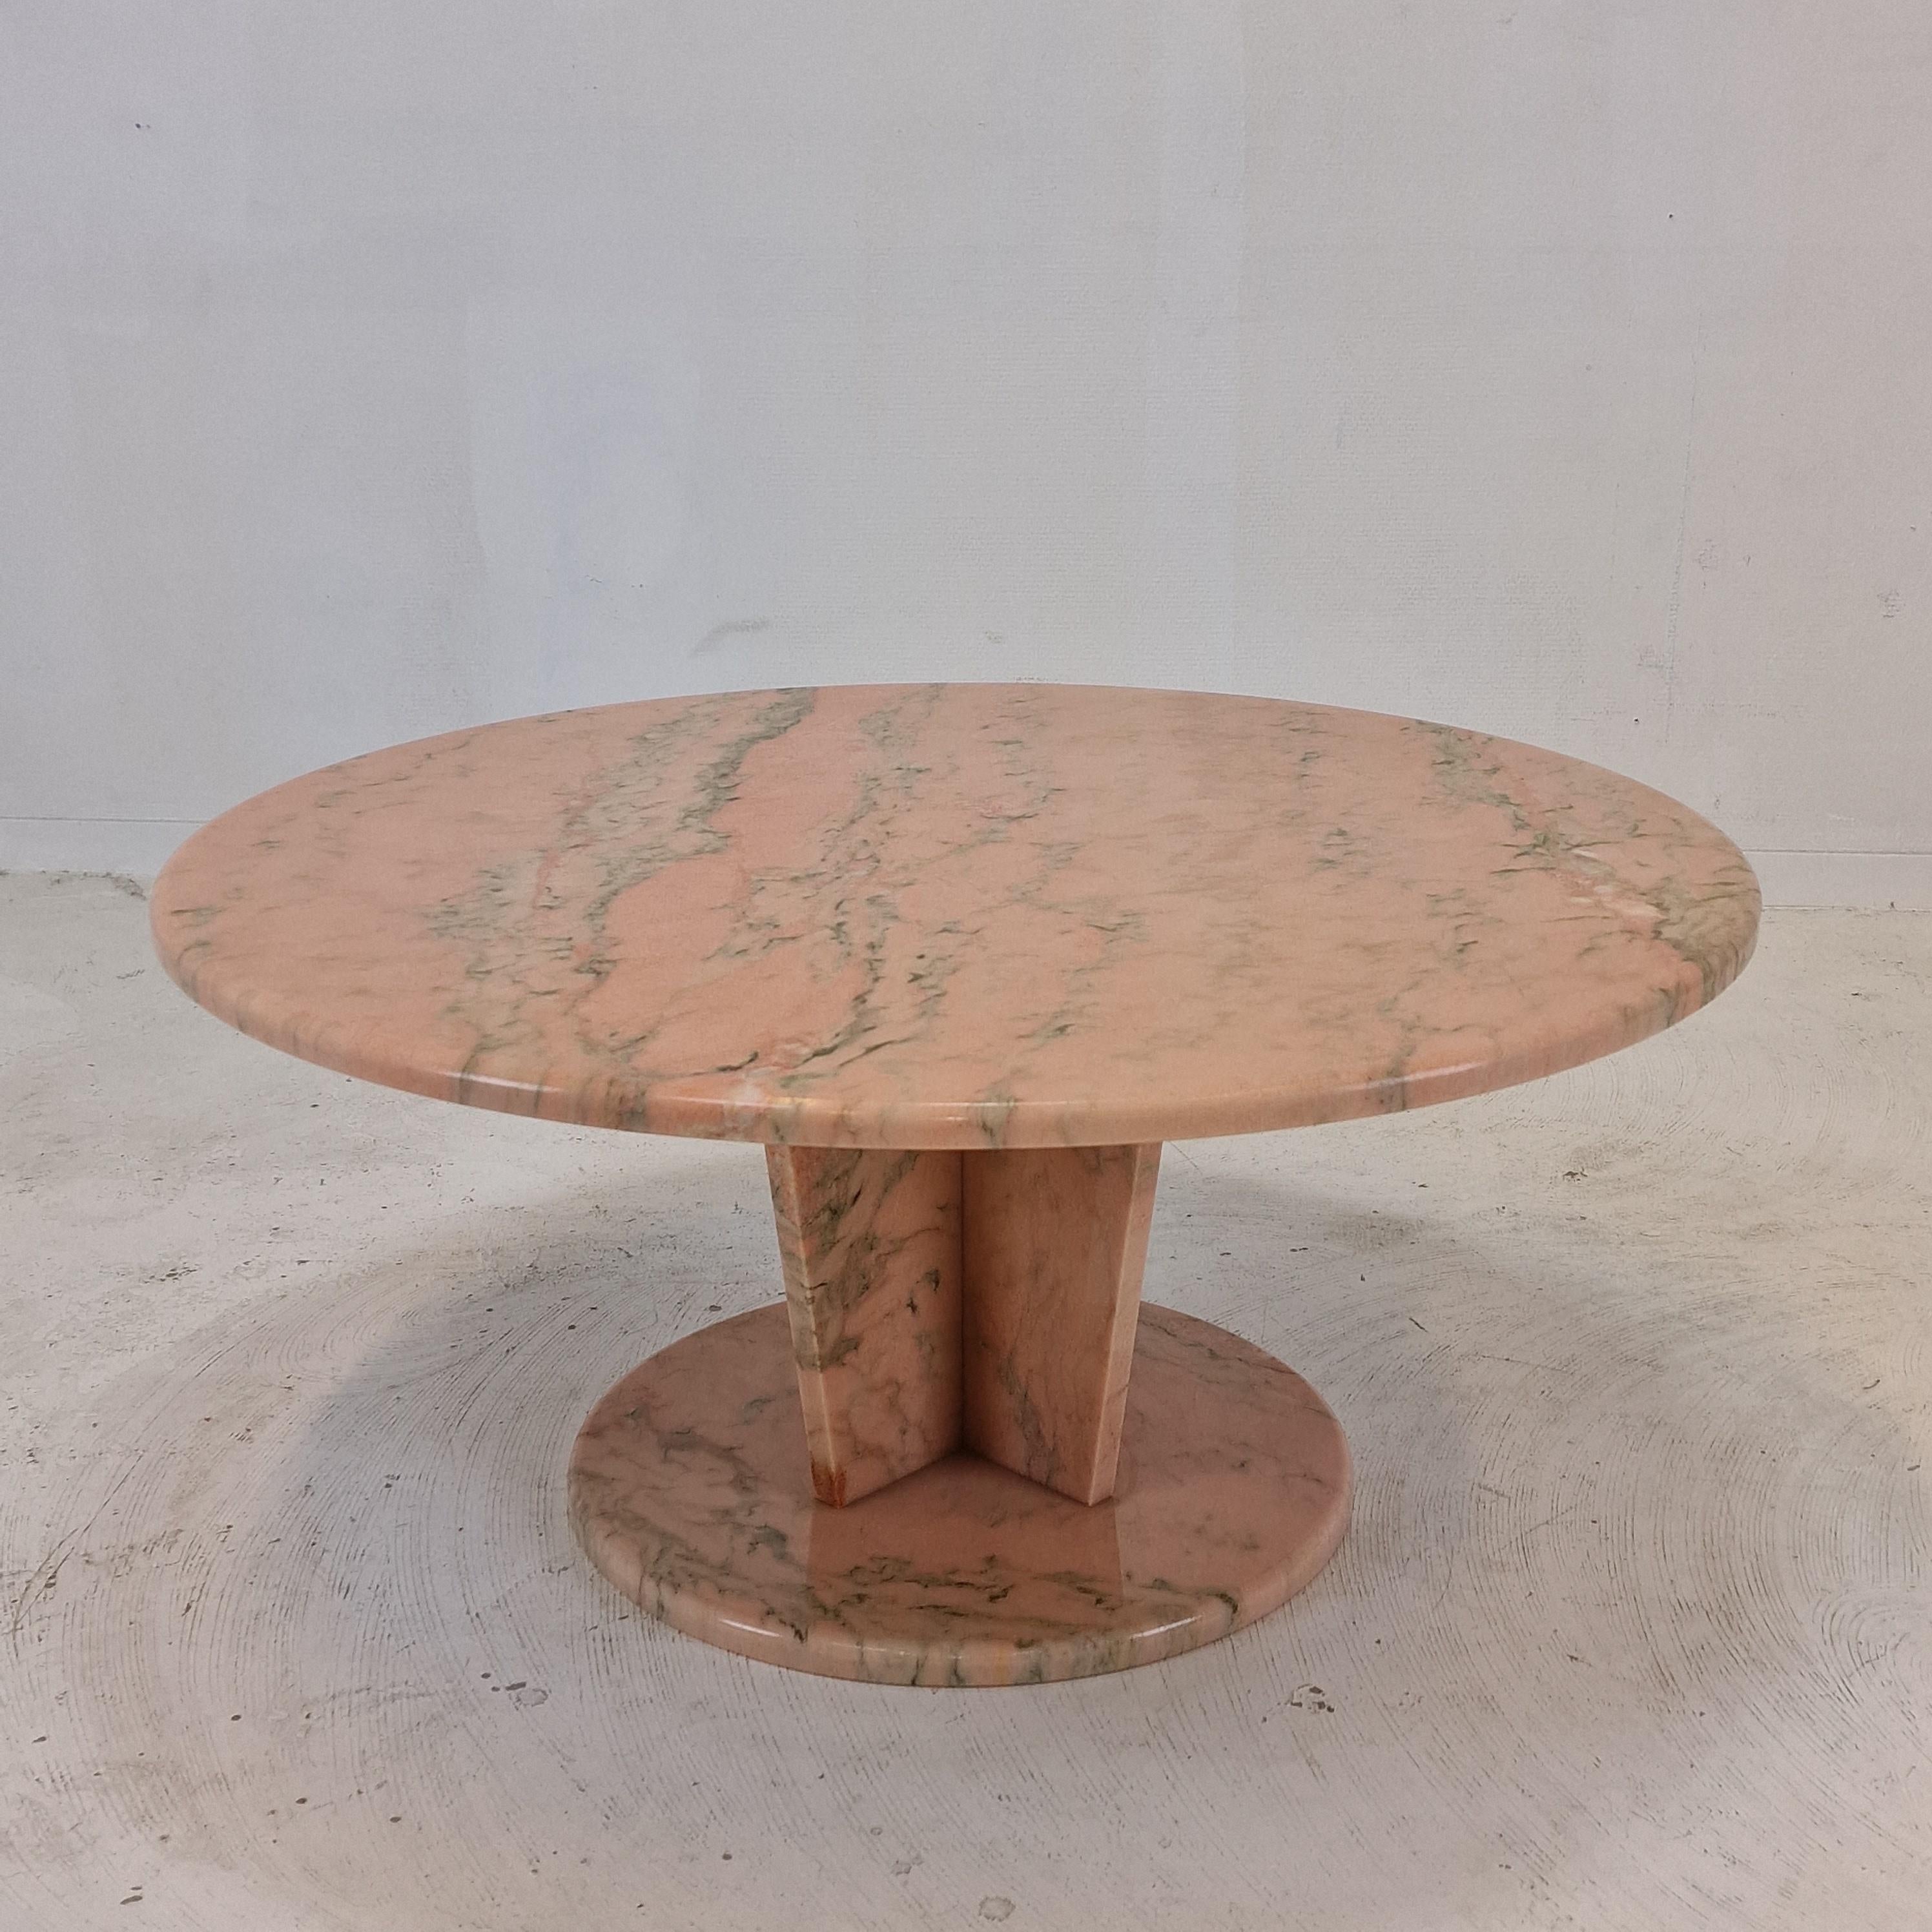 Superbe table basse ou table d'appoint ronde en marbre italien, fabriquée dans les années 80.

Le fabuleux marbre présente un magnifique motif de différentes couleurs.

Il est en très bon état, avec les traces normales d'utilisation.

Nous